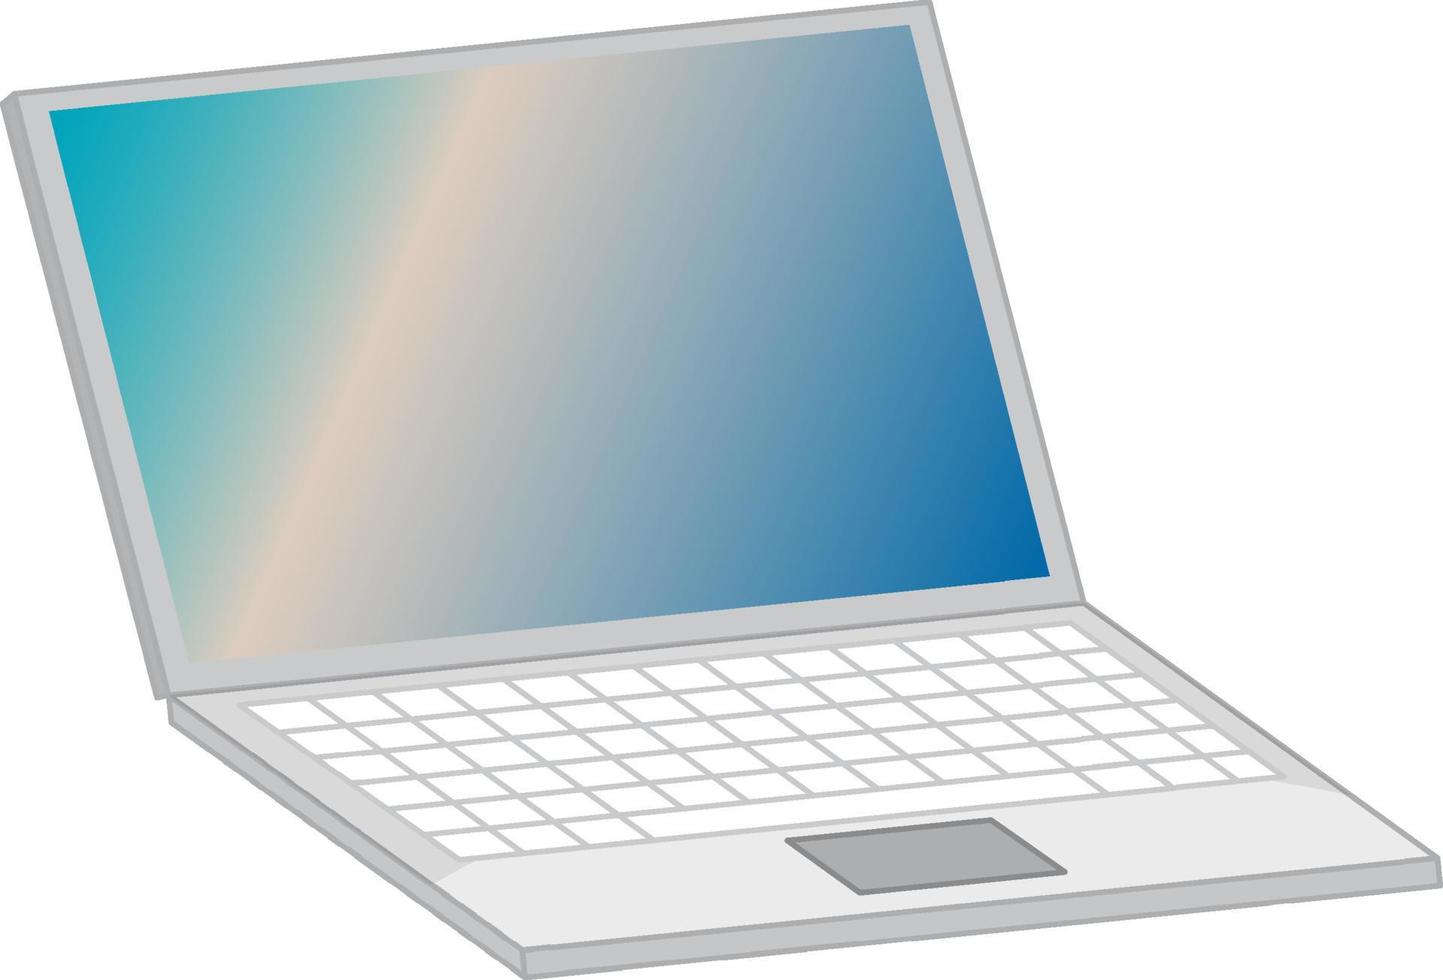 Laptop-Computer isoliert auf weißem Hintergrund vektor